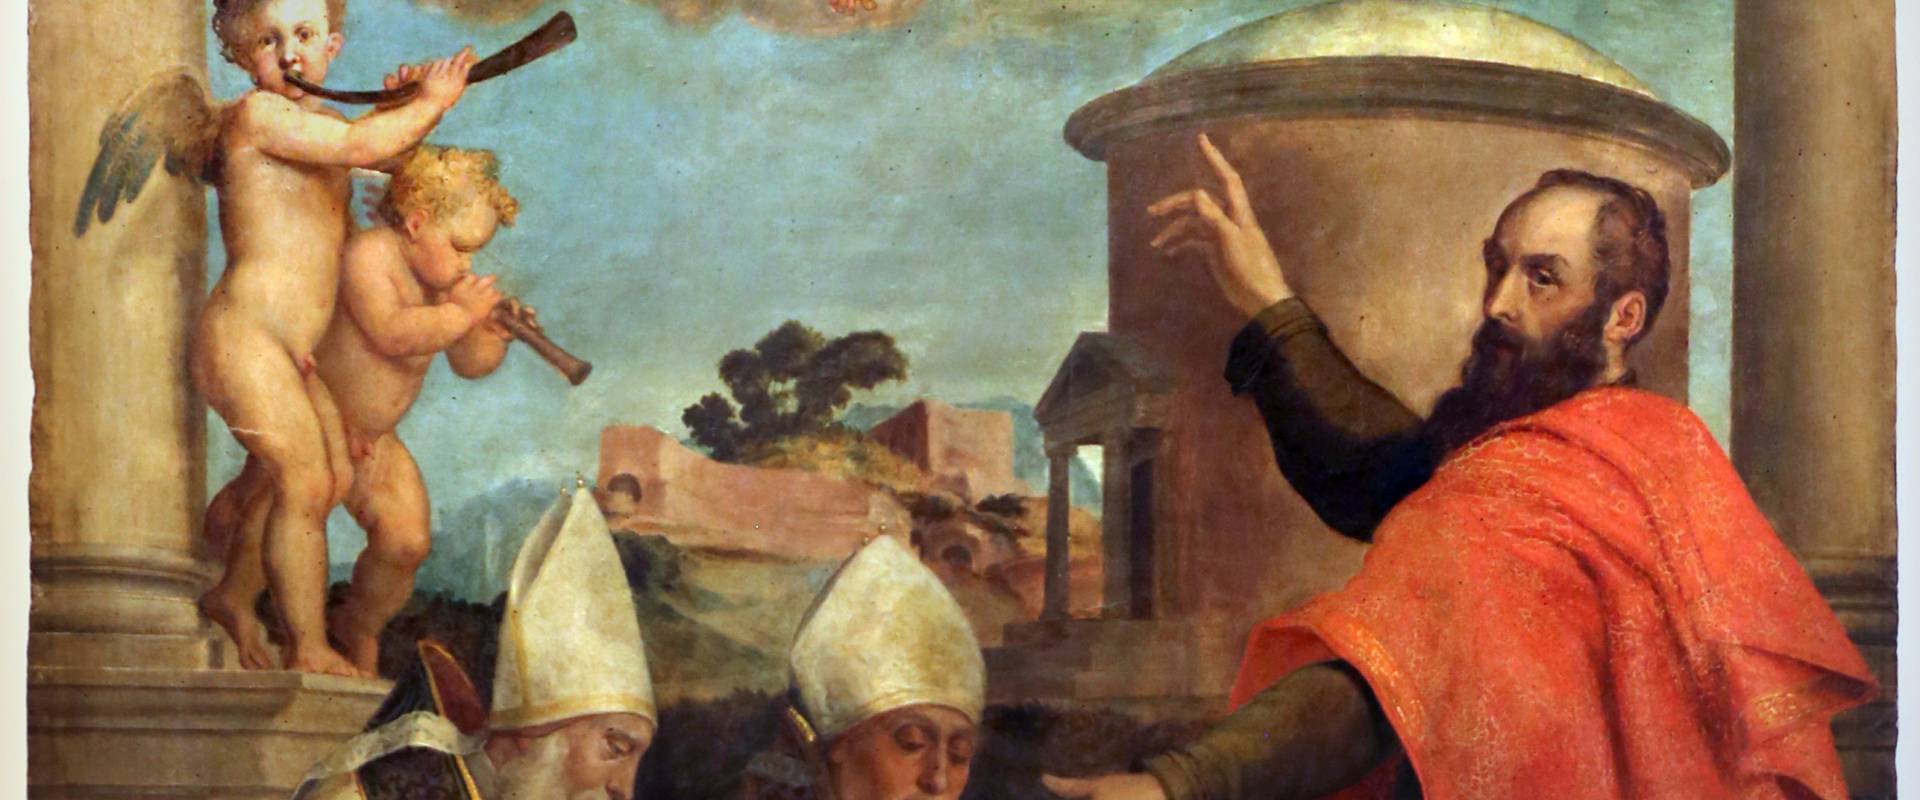 Francesco menzocchi, san paolo detta precetti a due vescovi, 1540-50 ca., dal duomo di forlì photo by Sailko